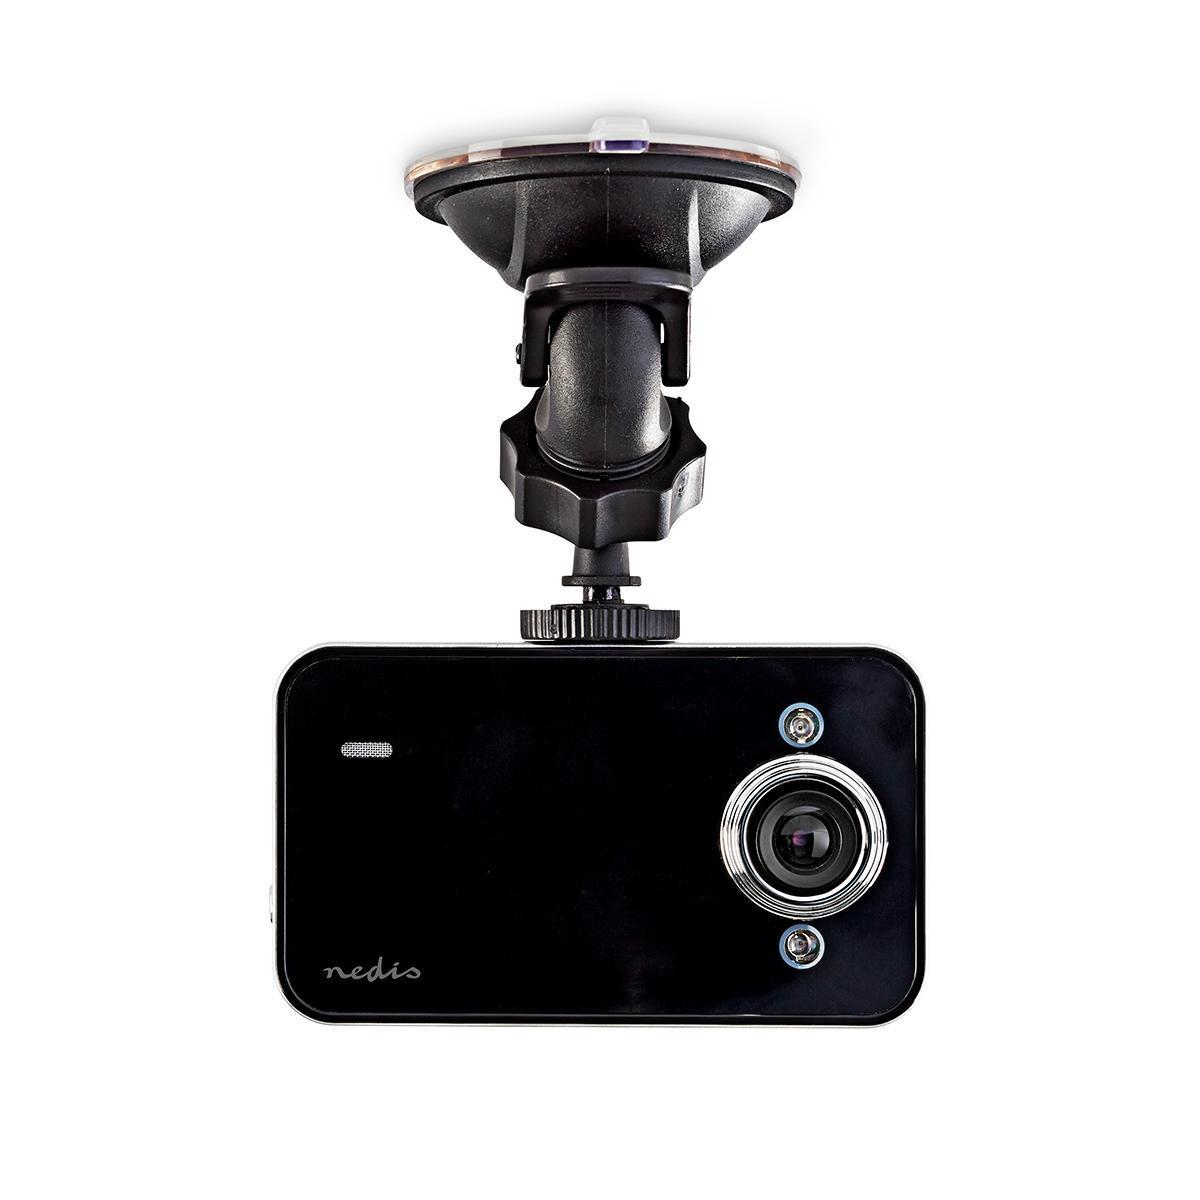 Caméra embarquée (dashcam) 720p@30fps  3.0 mpixel  2.4 "  lcd  détection de mouvement